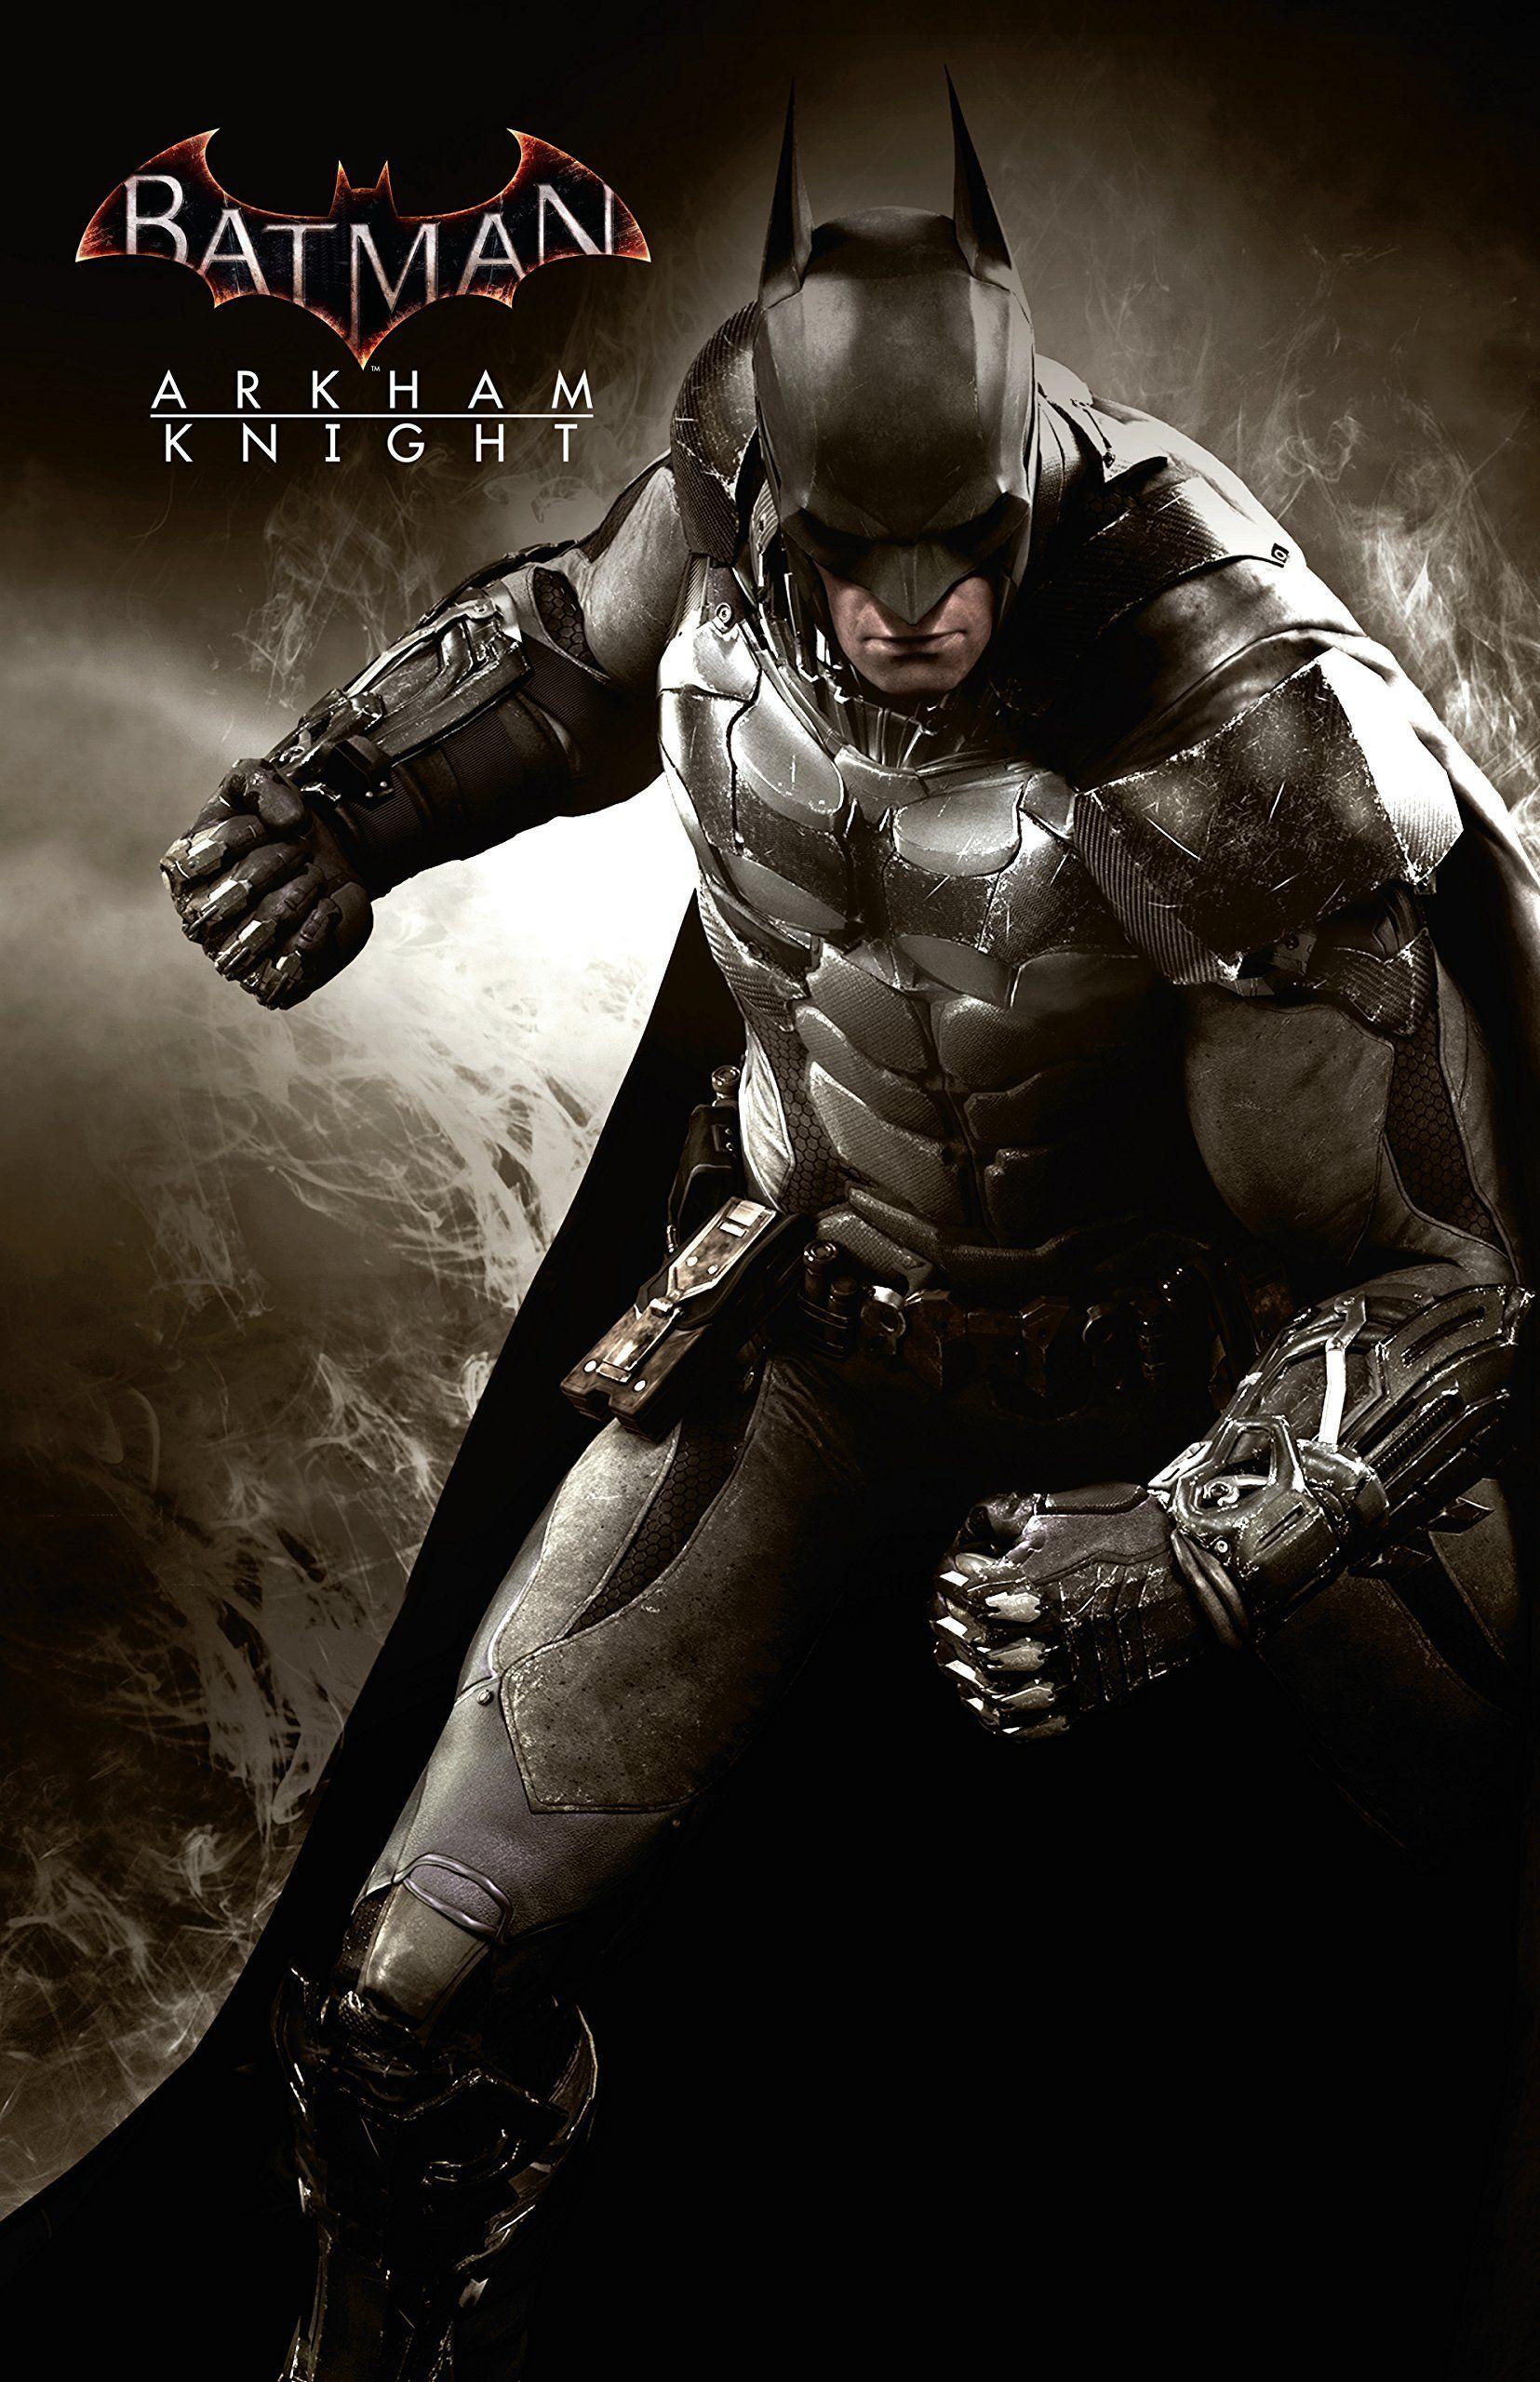 Batman Arkham Knight Wallpapers - Top Free Batman Arkham Knight ...